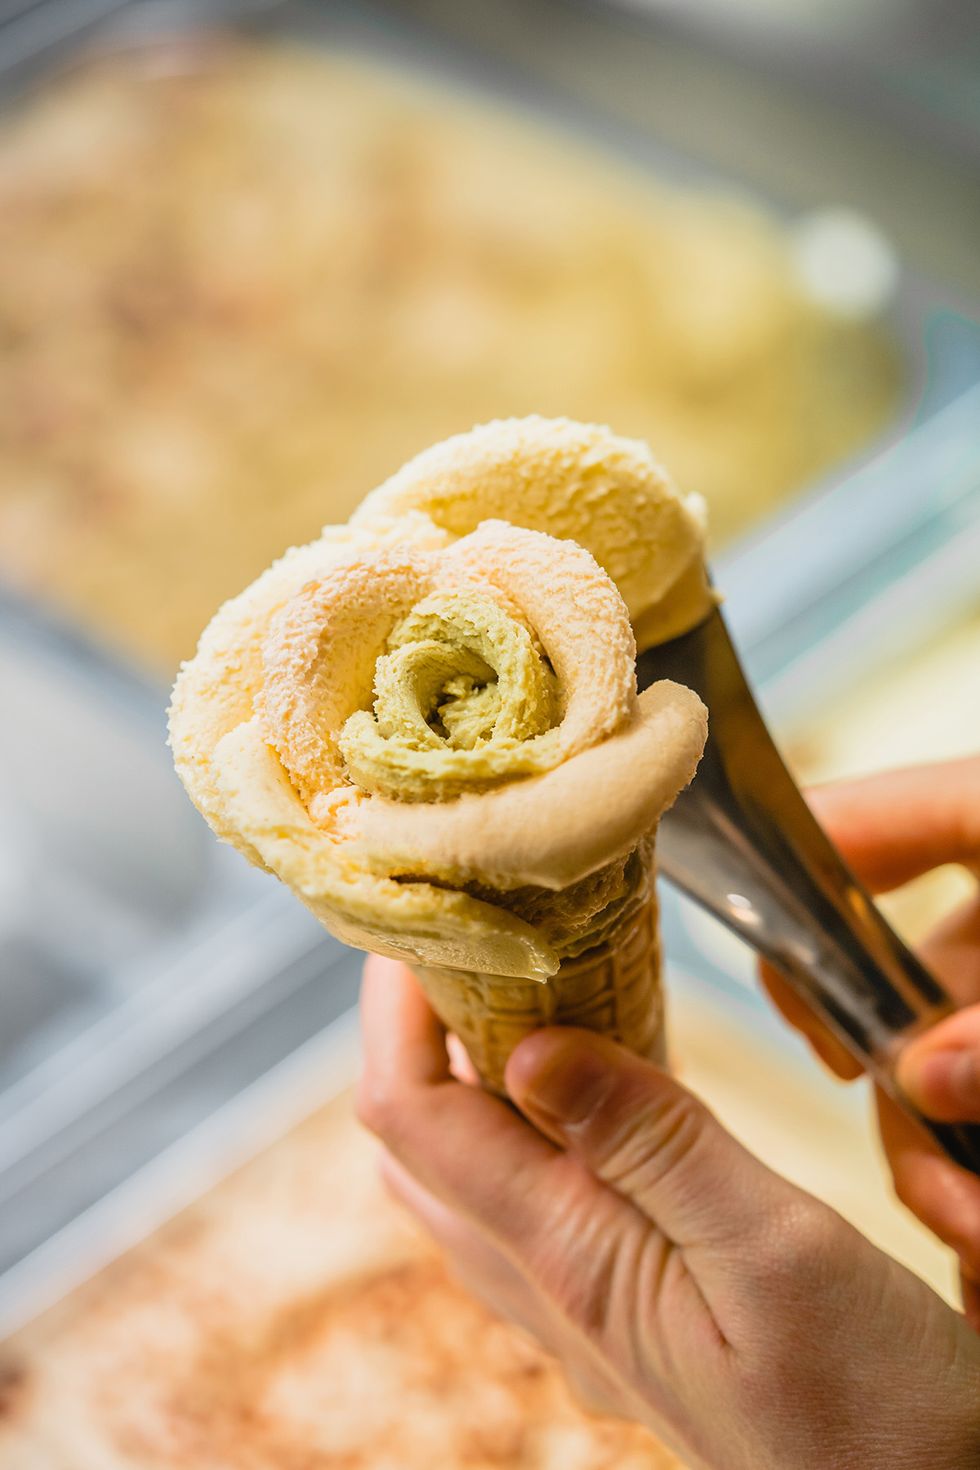 flor de helado de amorino, heladería de food hall de galería canalejas en madrid